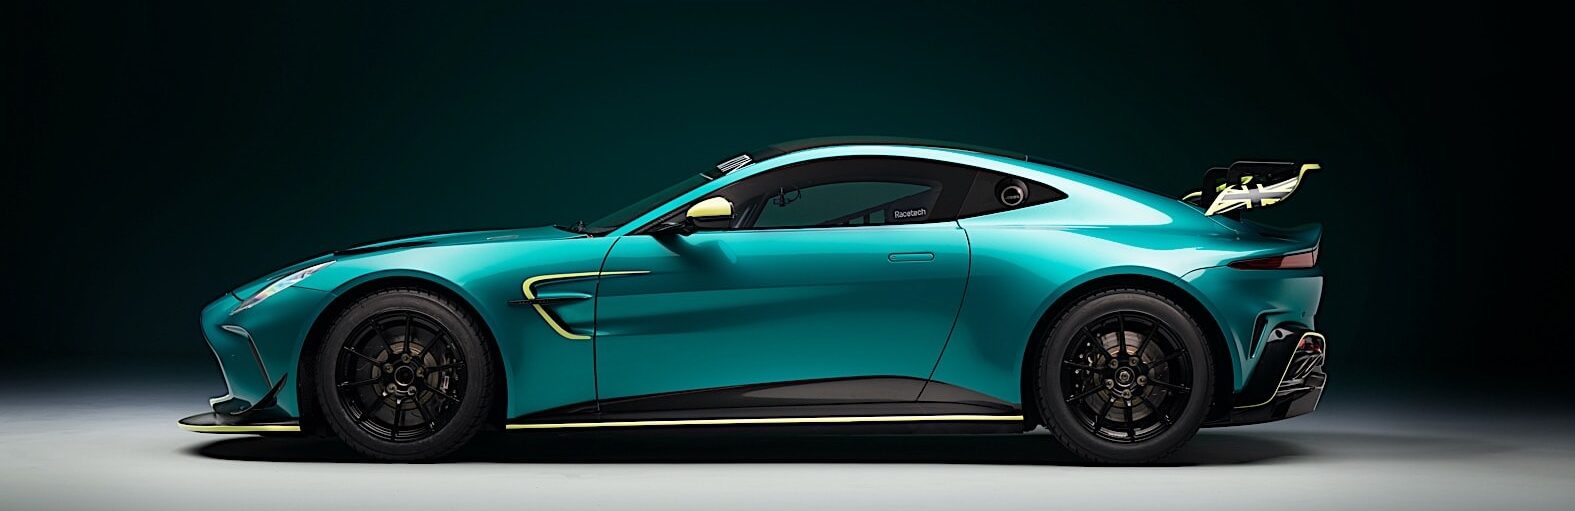 Новый Aston Martin Vantage GT4, гоночный автомобиль для юных профессионалов вождения